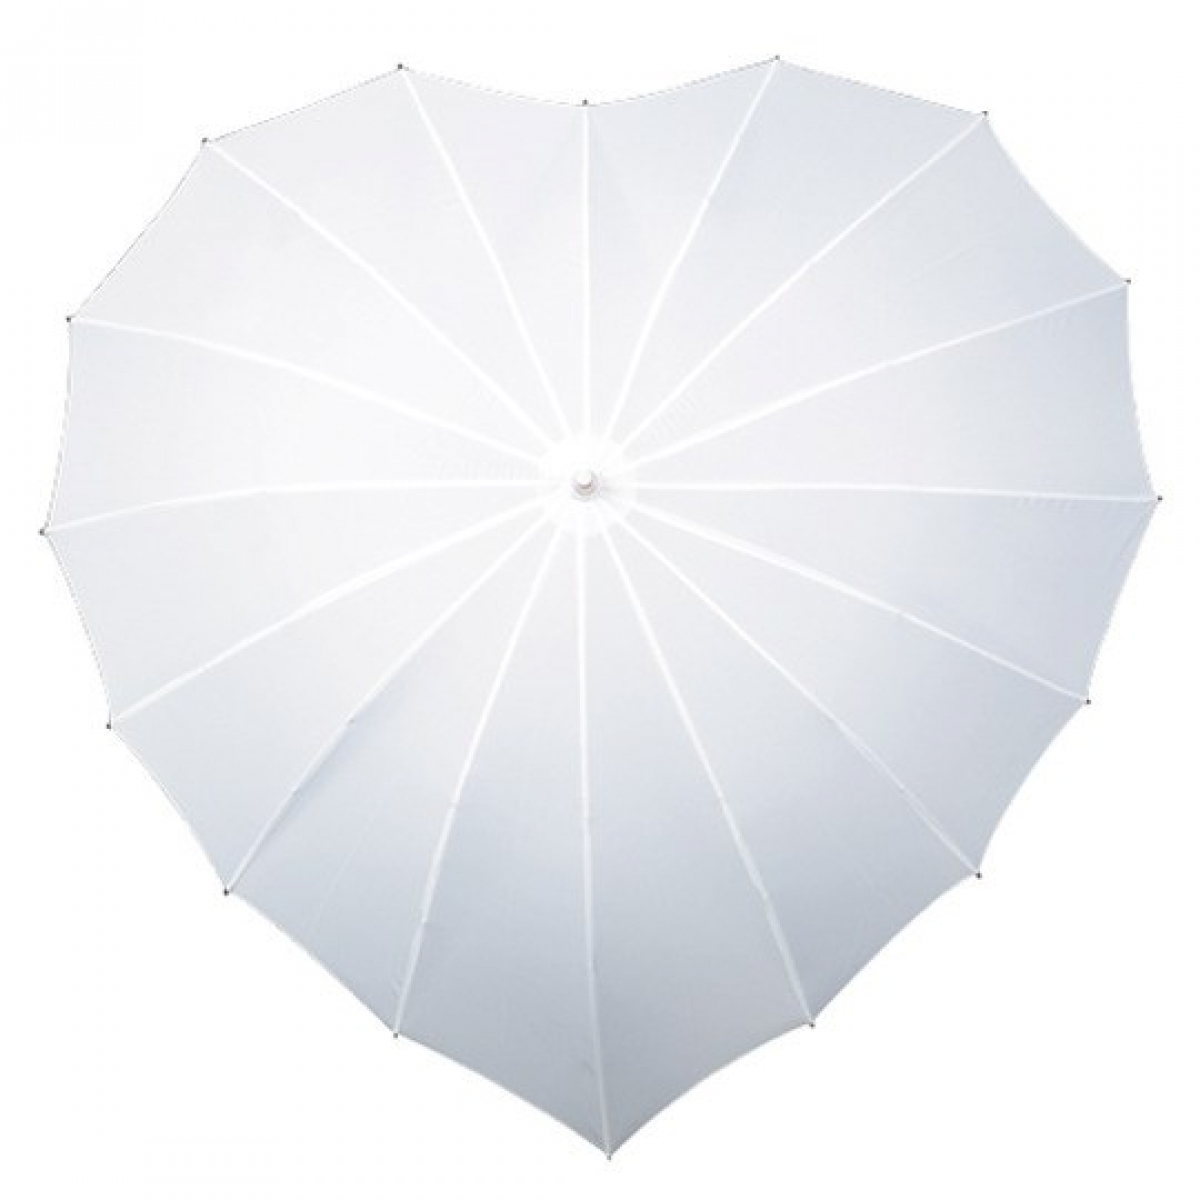 Paraplu | Hartvormig | Windproof